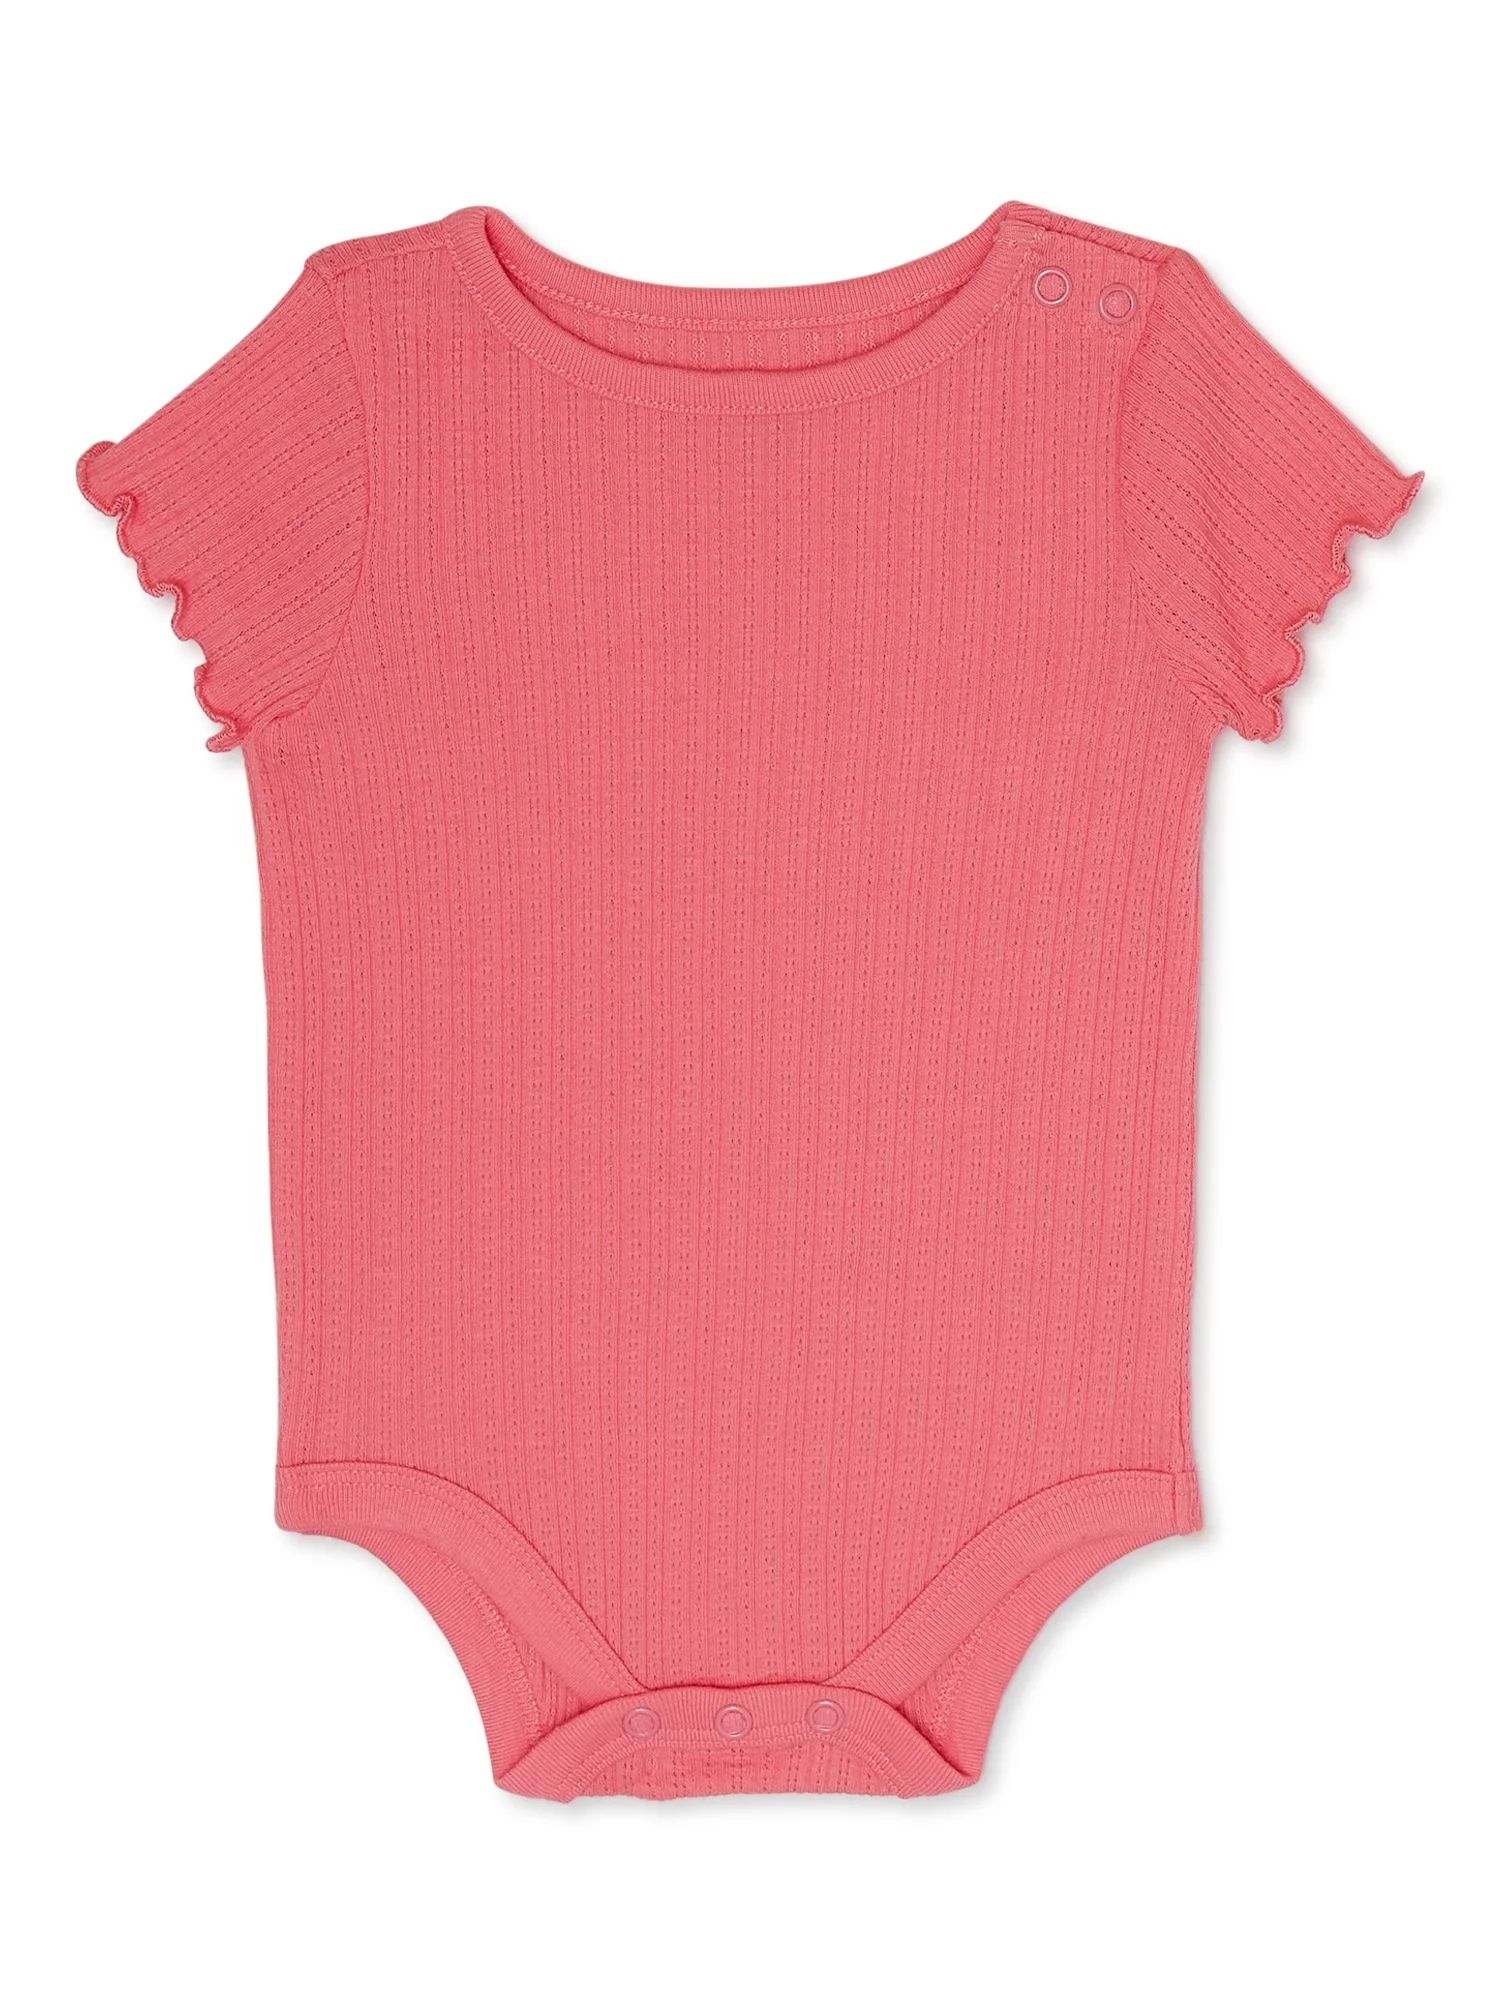 Garanimals Baby Girl Short Sleeve Pointelle Solid Bodysuit, Sizes 0-24 Months | Walmart (US)